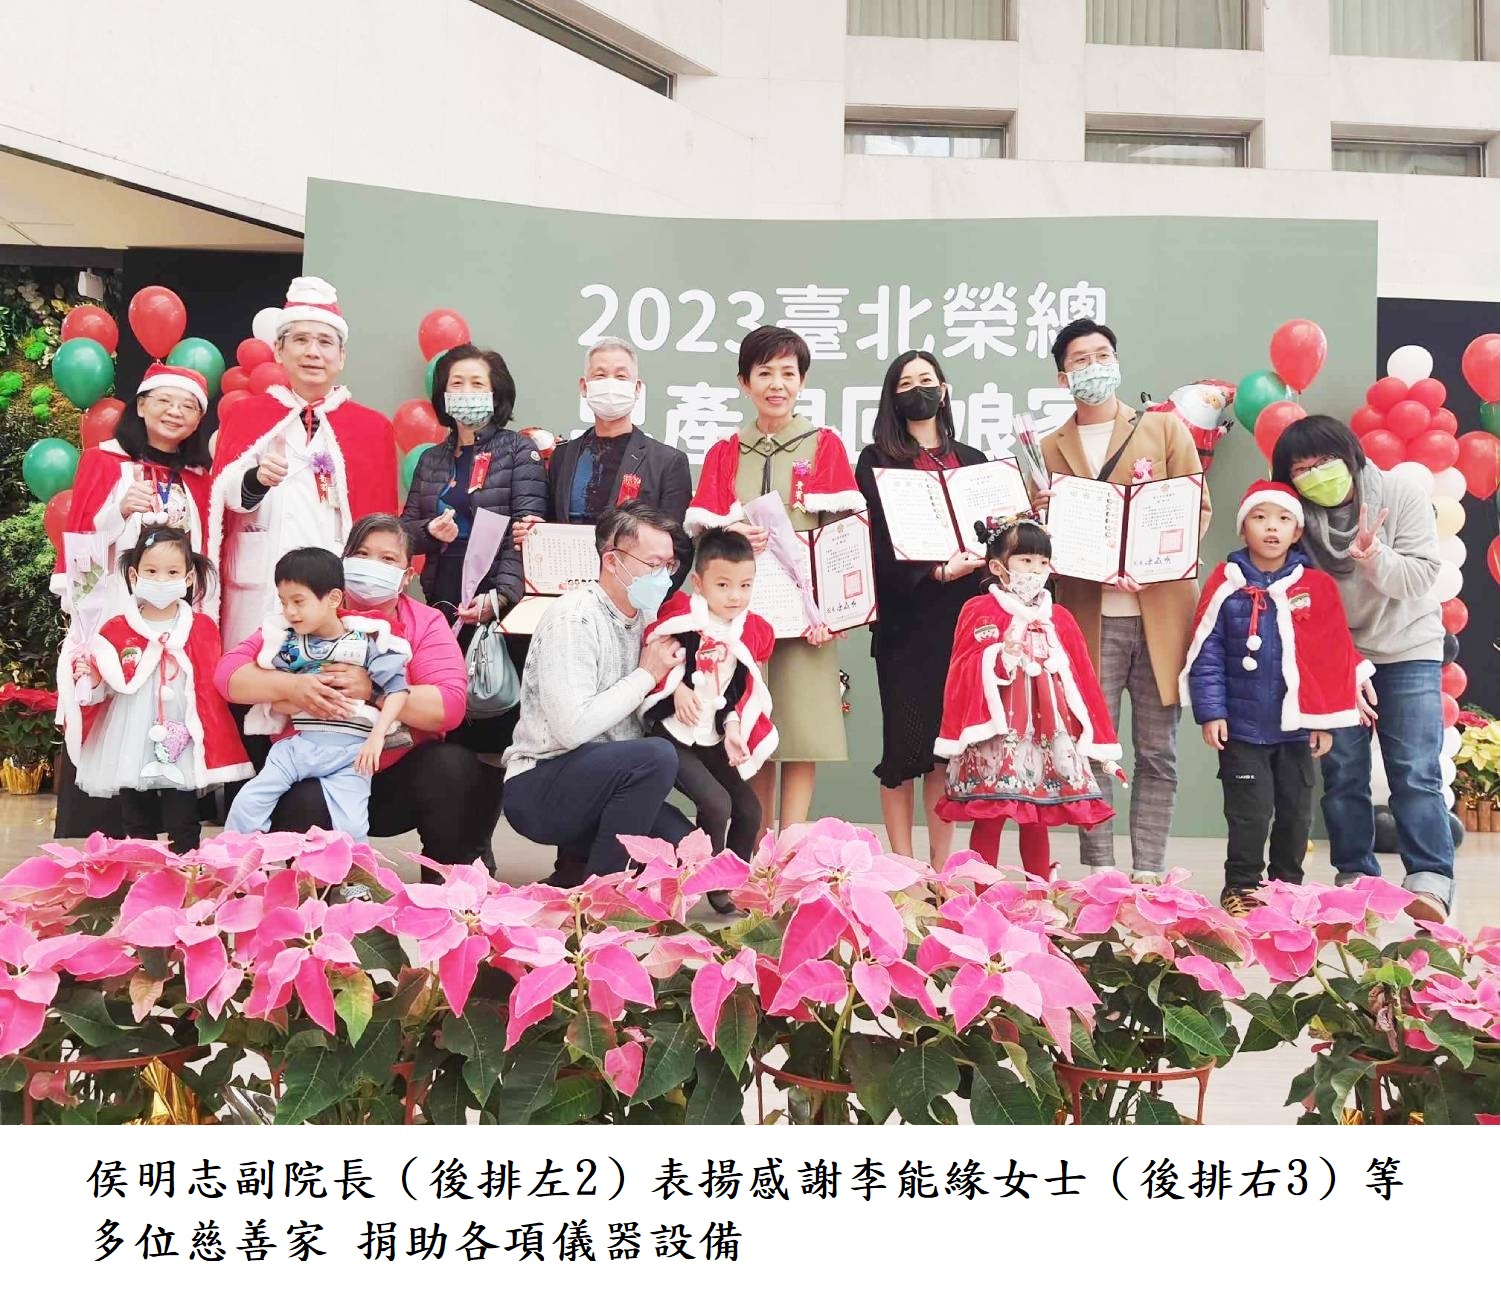 侯明志副院長（後排左2）表揚感謝李能緣女士（後排右3）等多位慈善家 捐助各項儀器設備